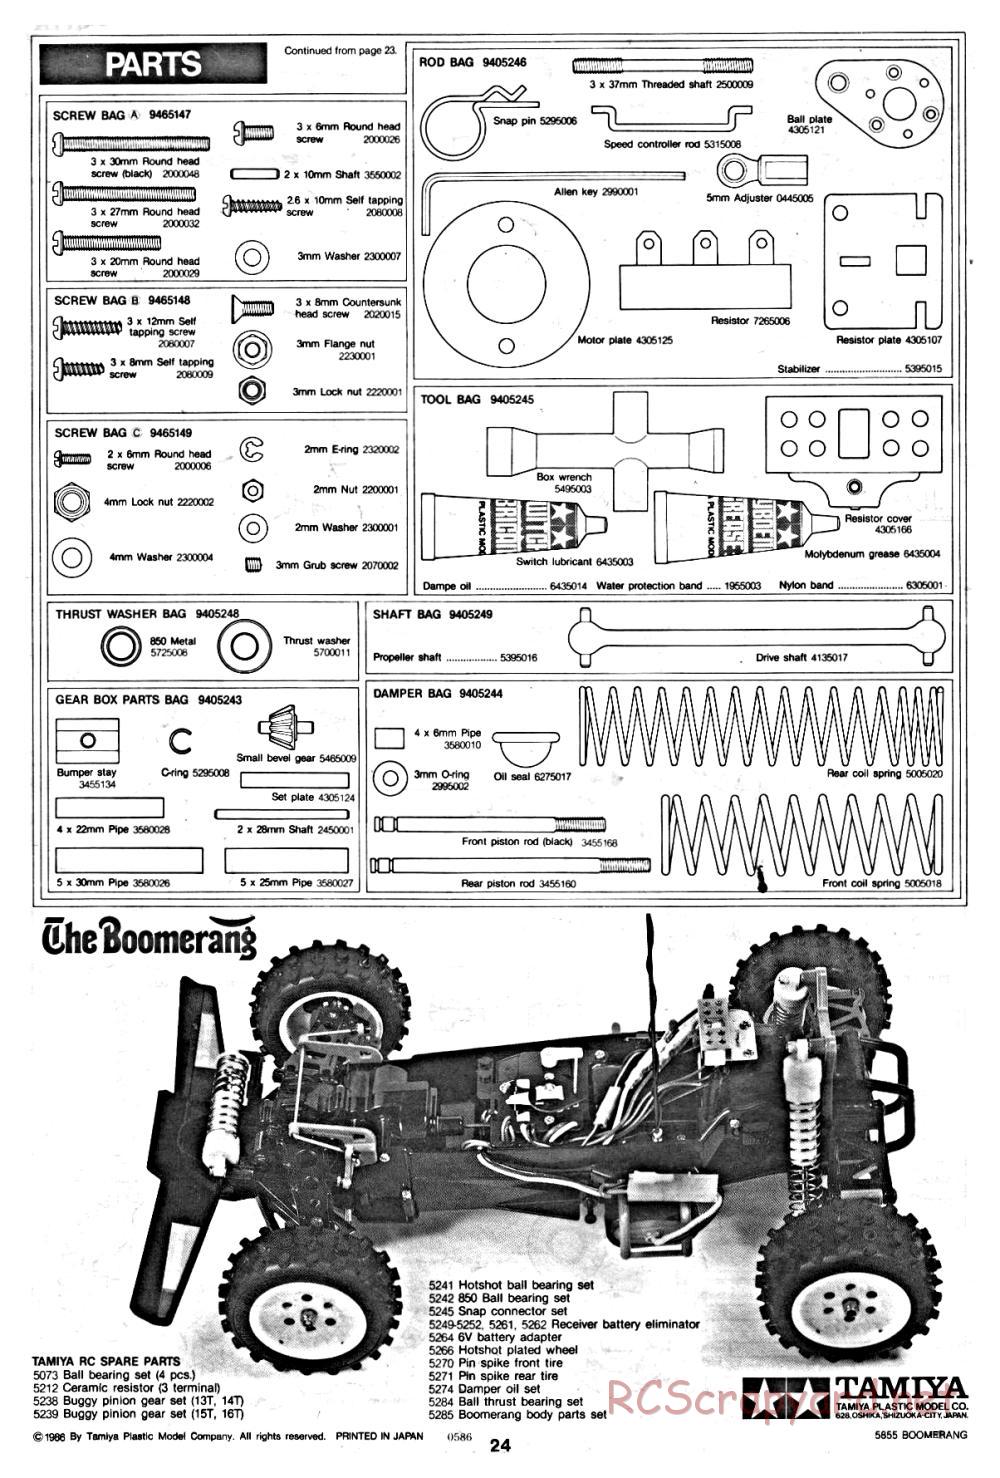 Tamiya - The Boomerang - 58055 - Manual - Page 24